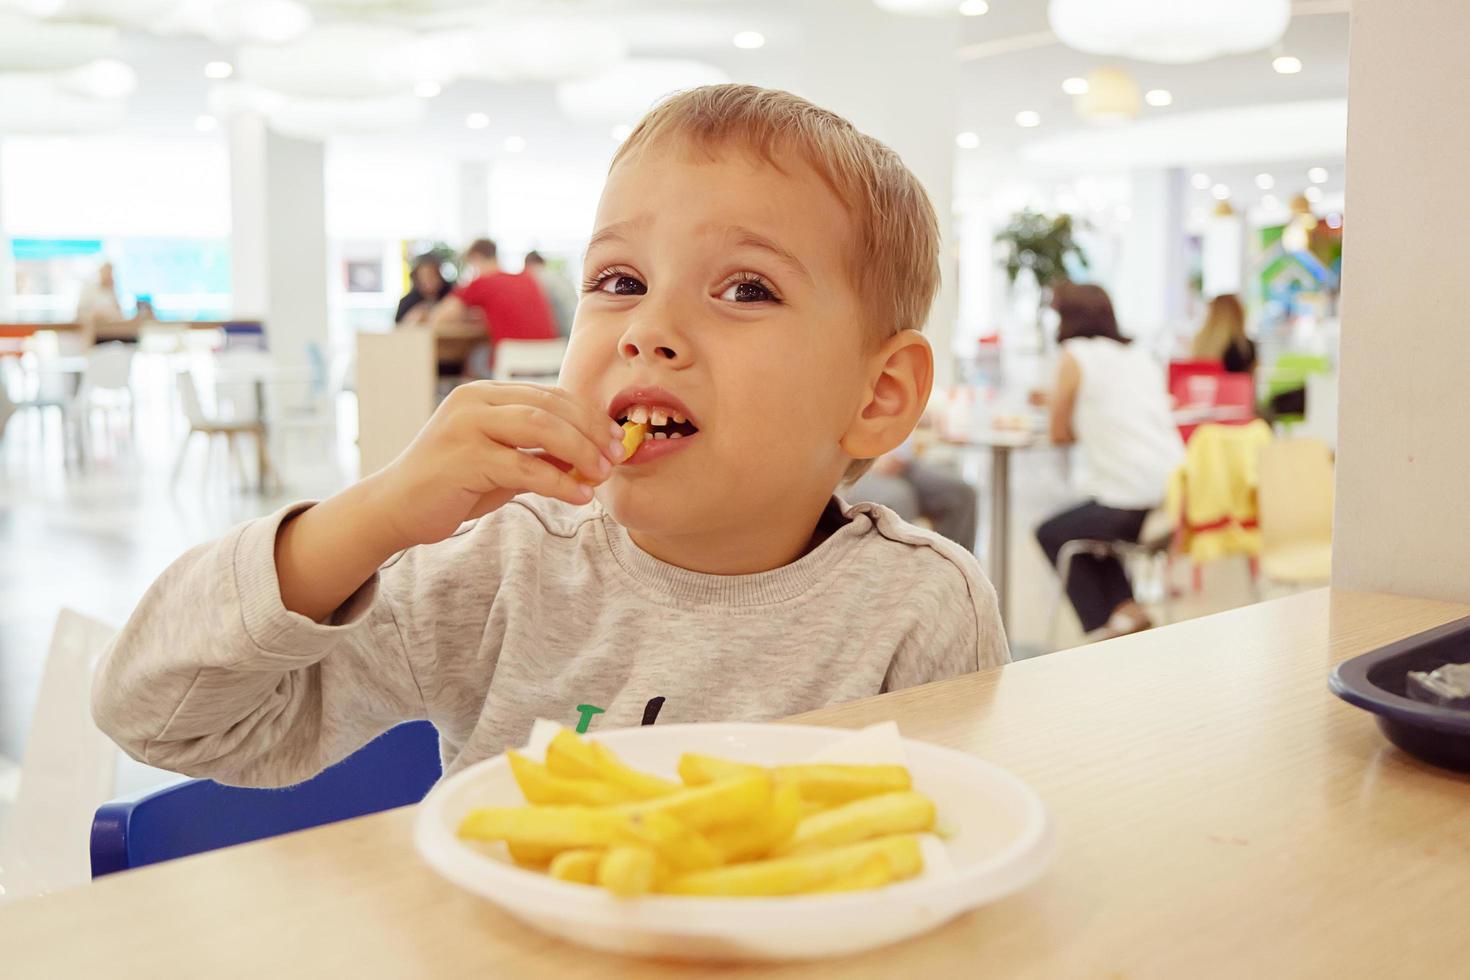 niño comiendo papas fritas sentado en una mesa en el patio de comidas del centro comercial. comida chatarra. foto